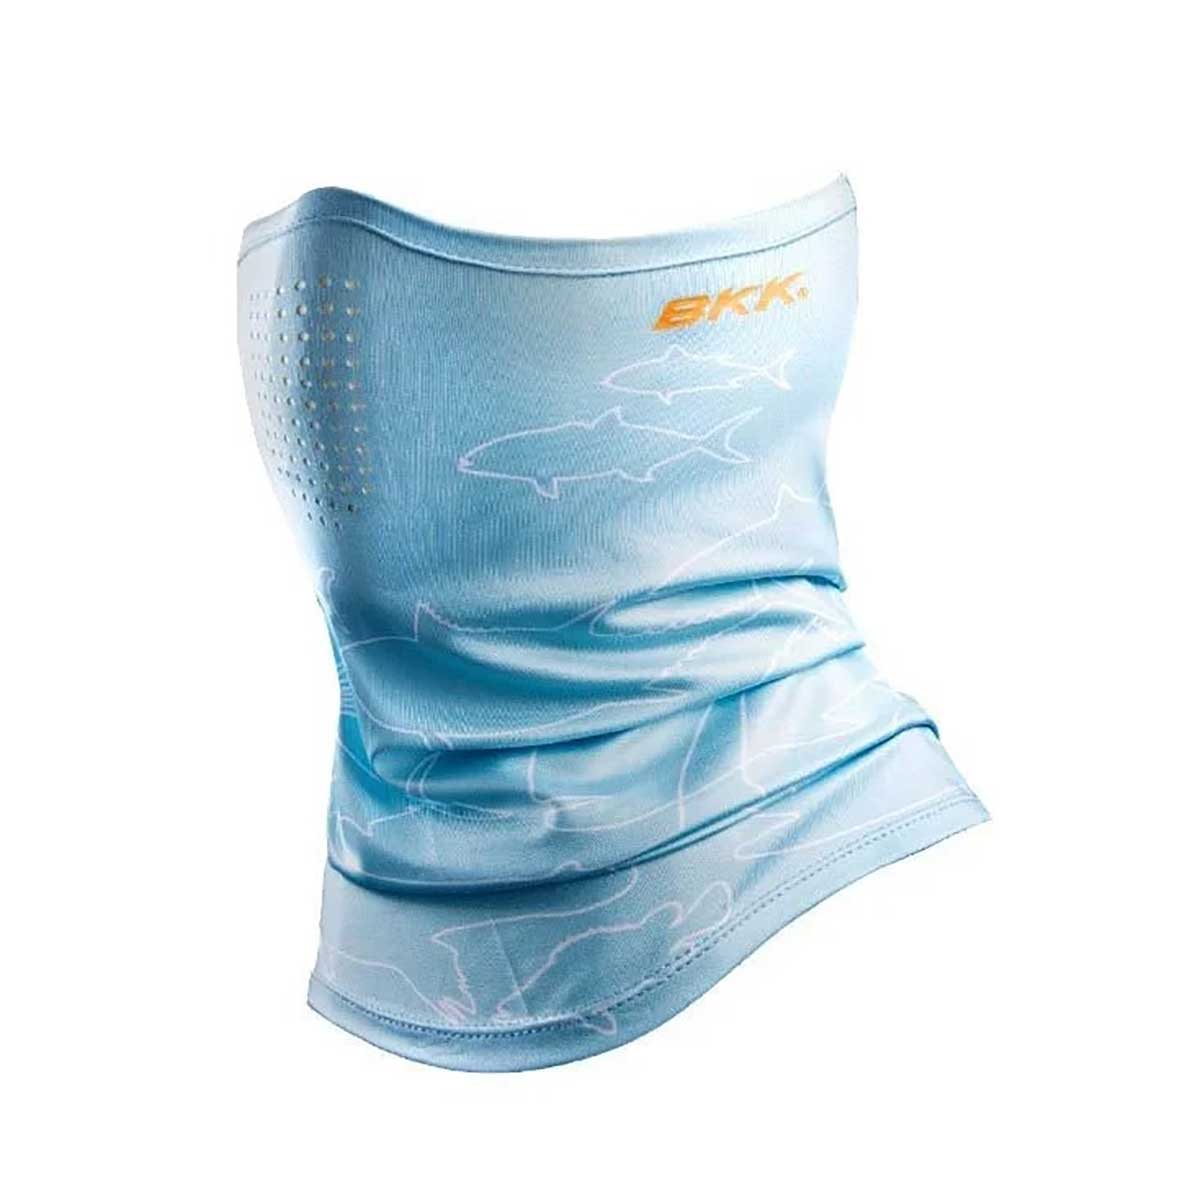 BKK O3 Shield Water Blue Boyunluk,soğuk havalarda veya güneşli havalar da boynunuzu soğuktan korumak ve güneşten muhafaza etmek için bkk kalitesinde mavi renk boyunluk